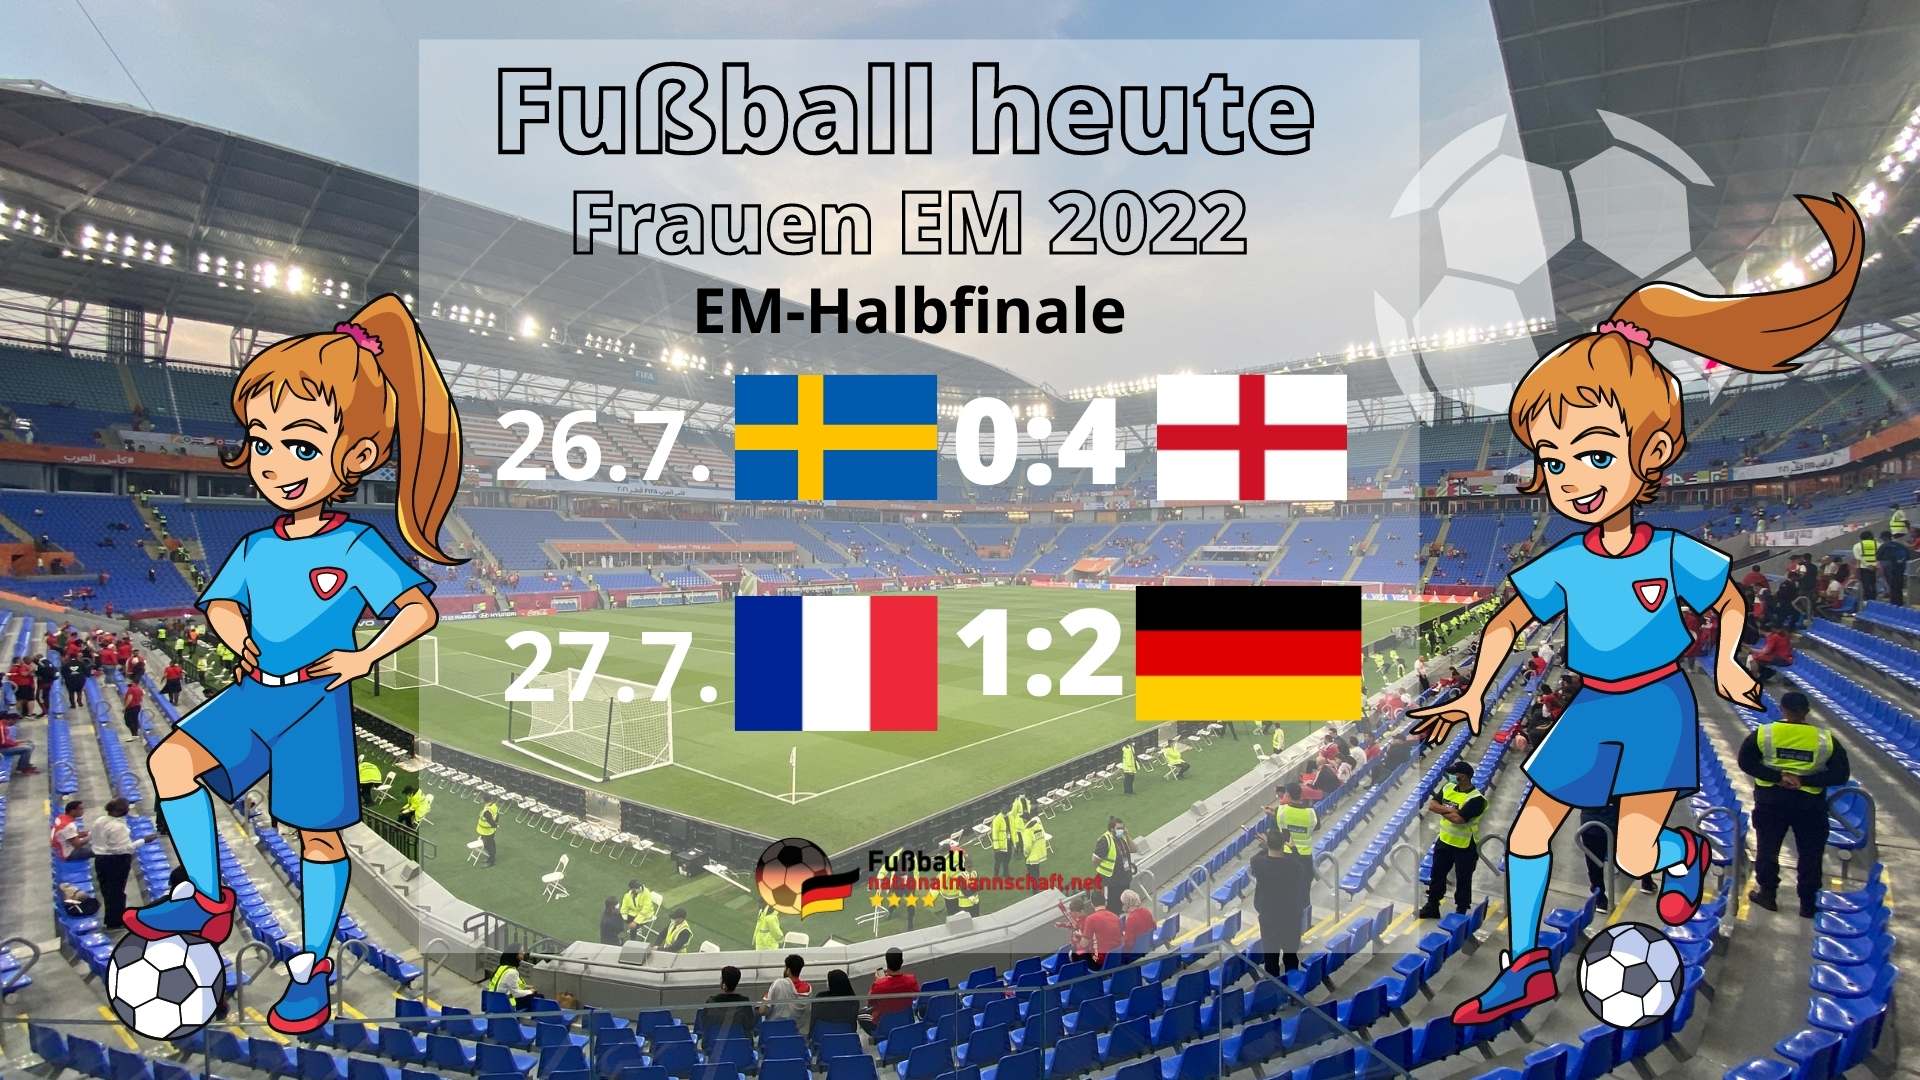 Fußball heute live * 21 Deutschland Frankreich * EM-Halbfinale Spielplan * EM 2022 Frauenfußball